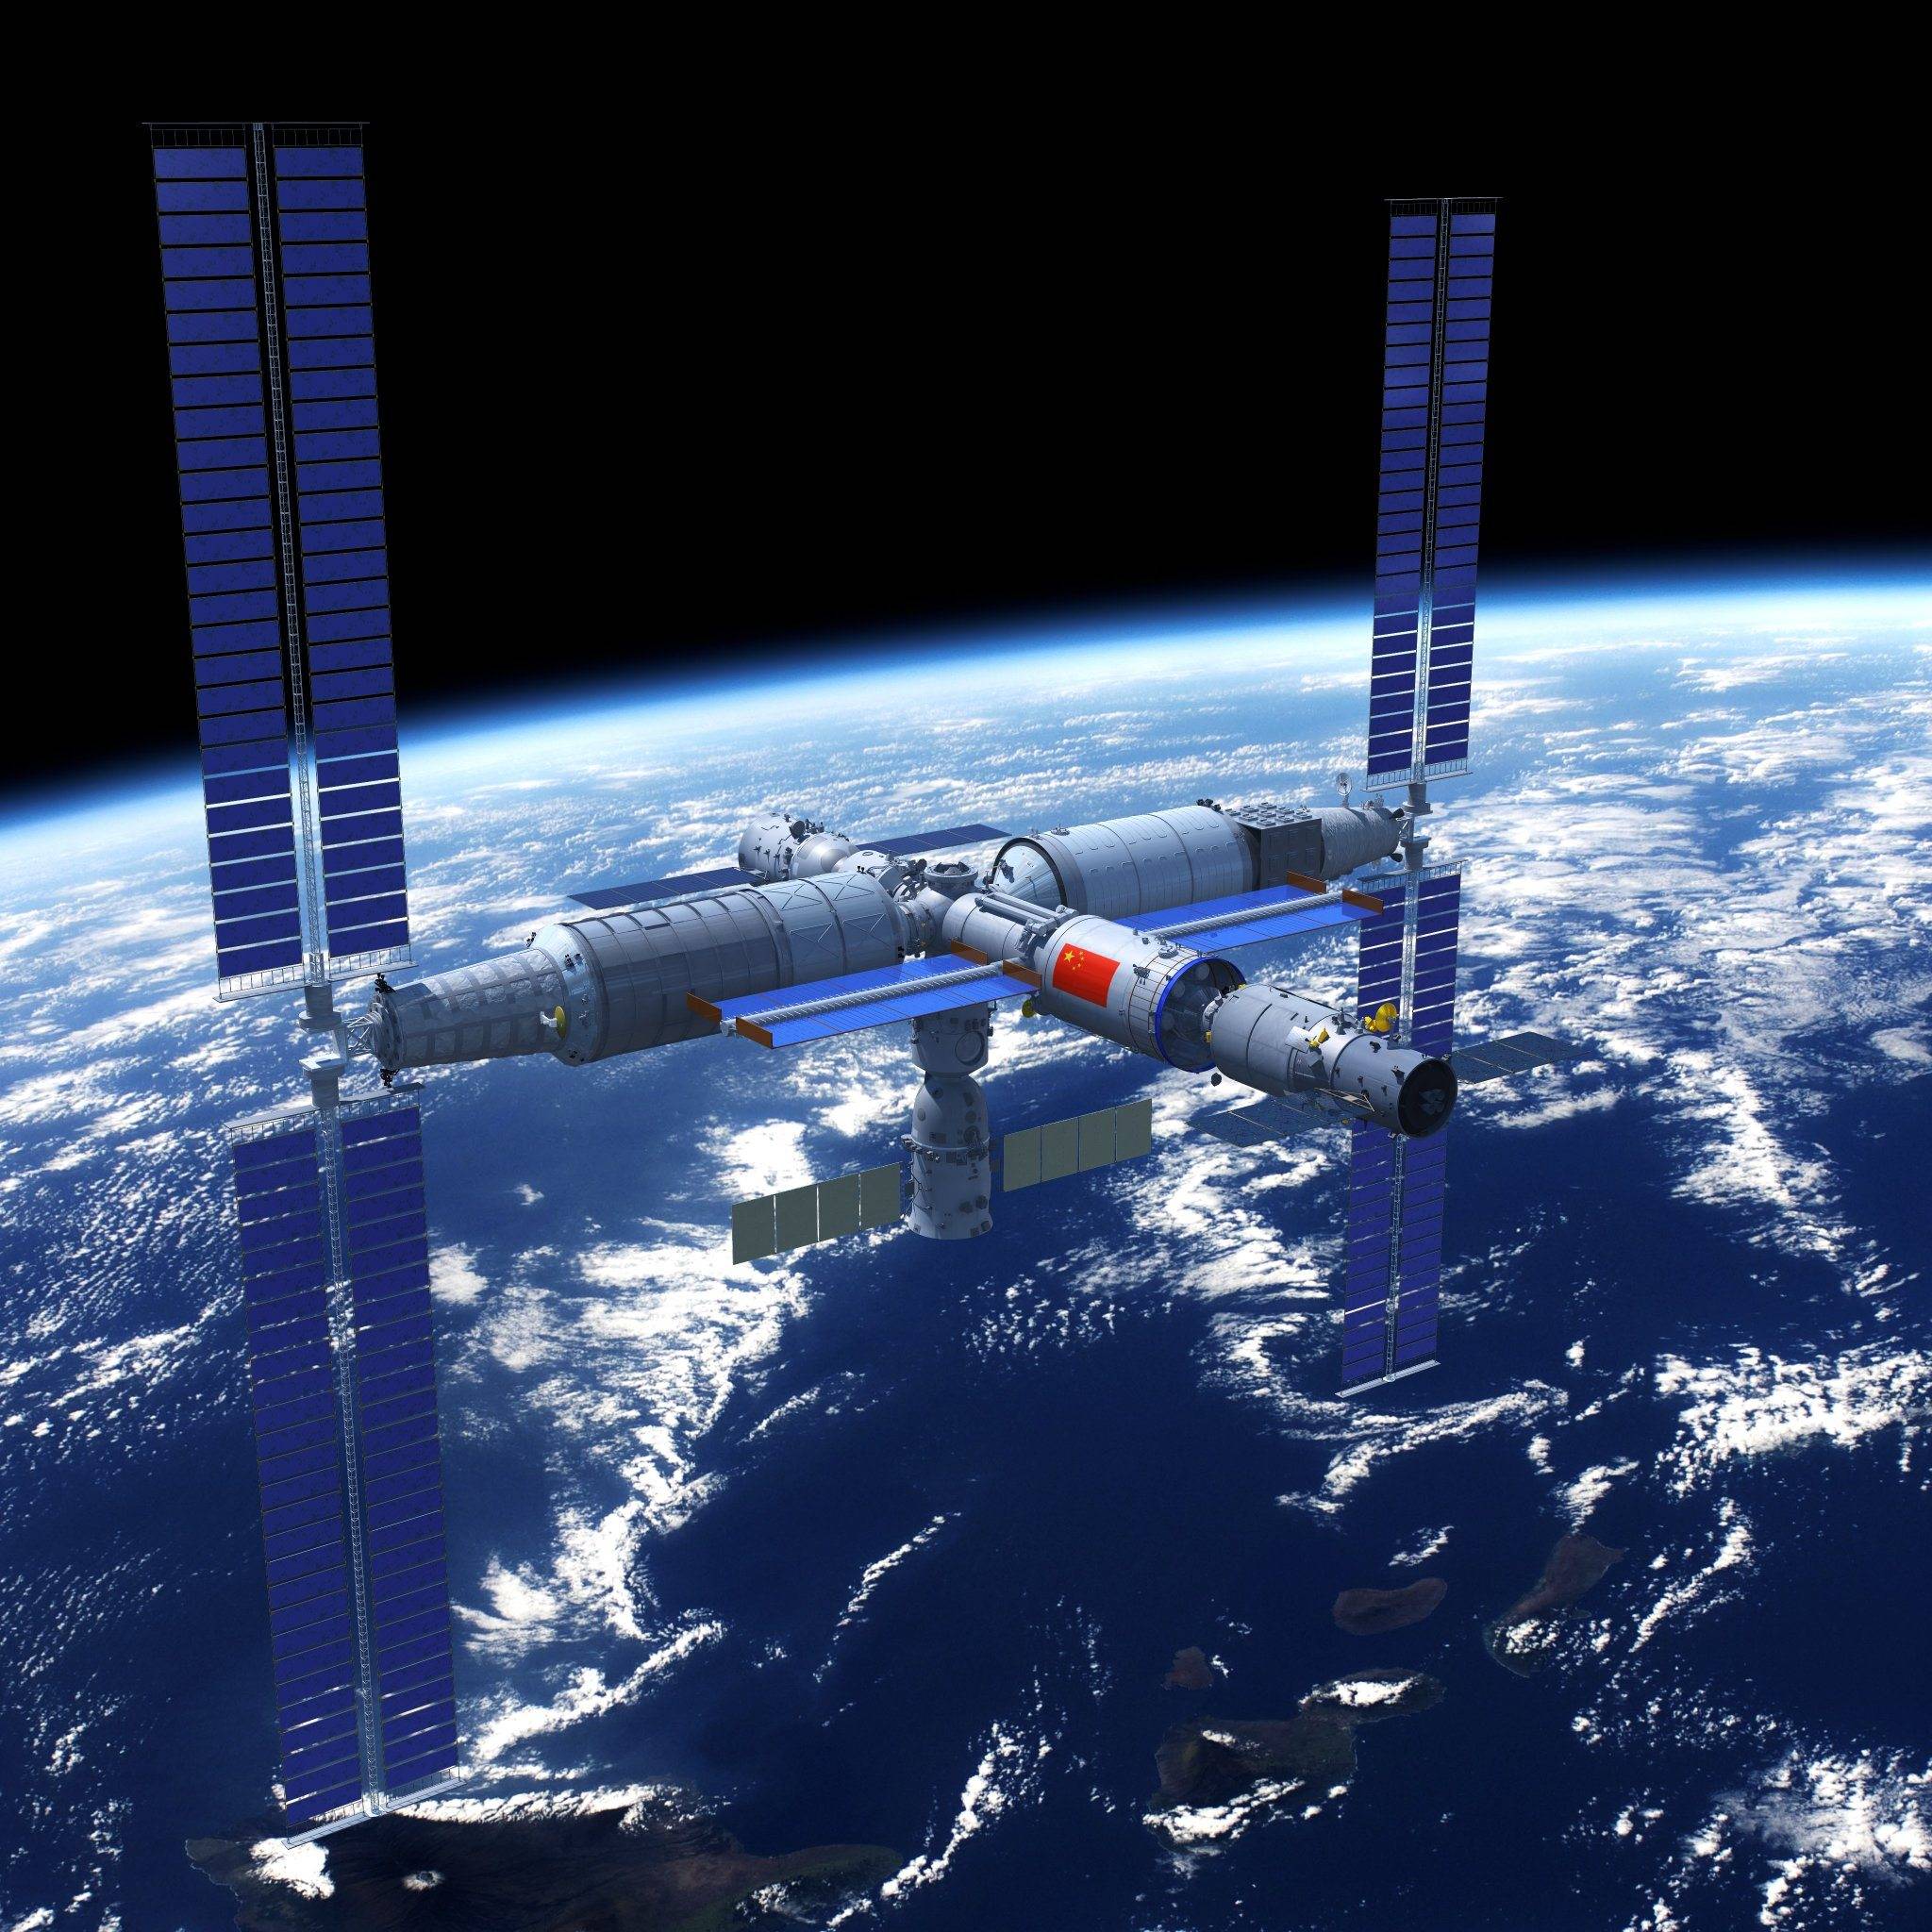 航天工程稳步推进,未来几年要建成国际空间站,彰显国家综合国力.